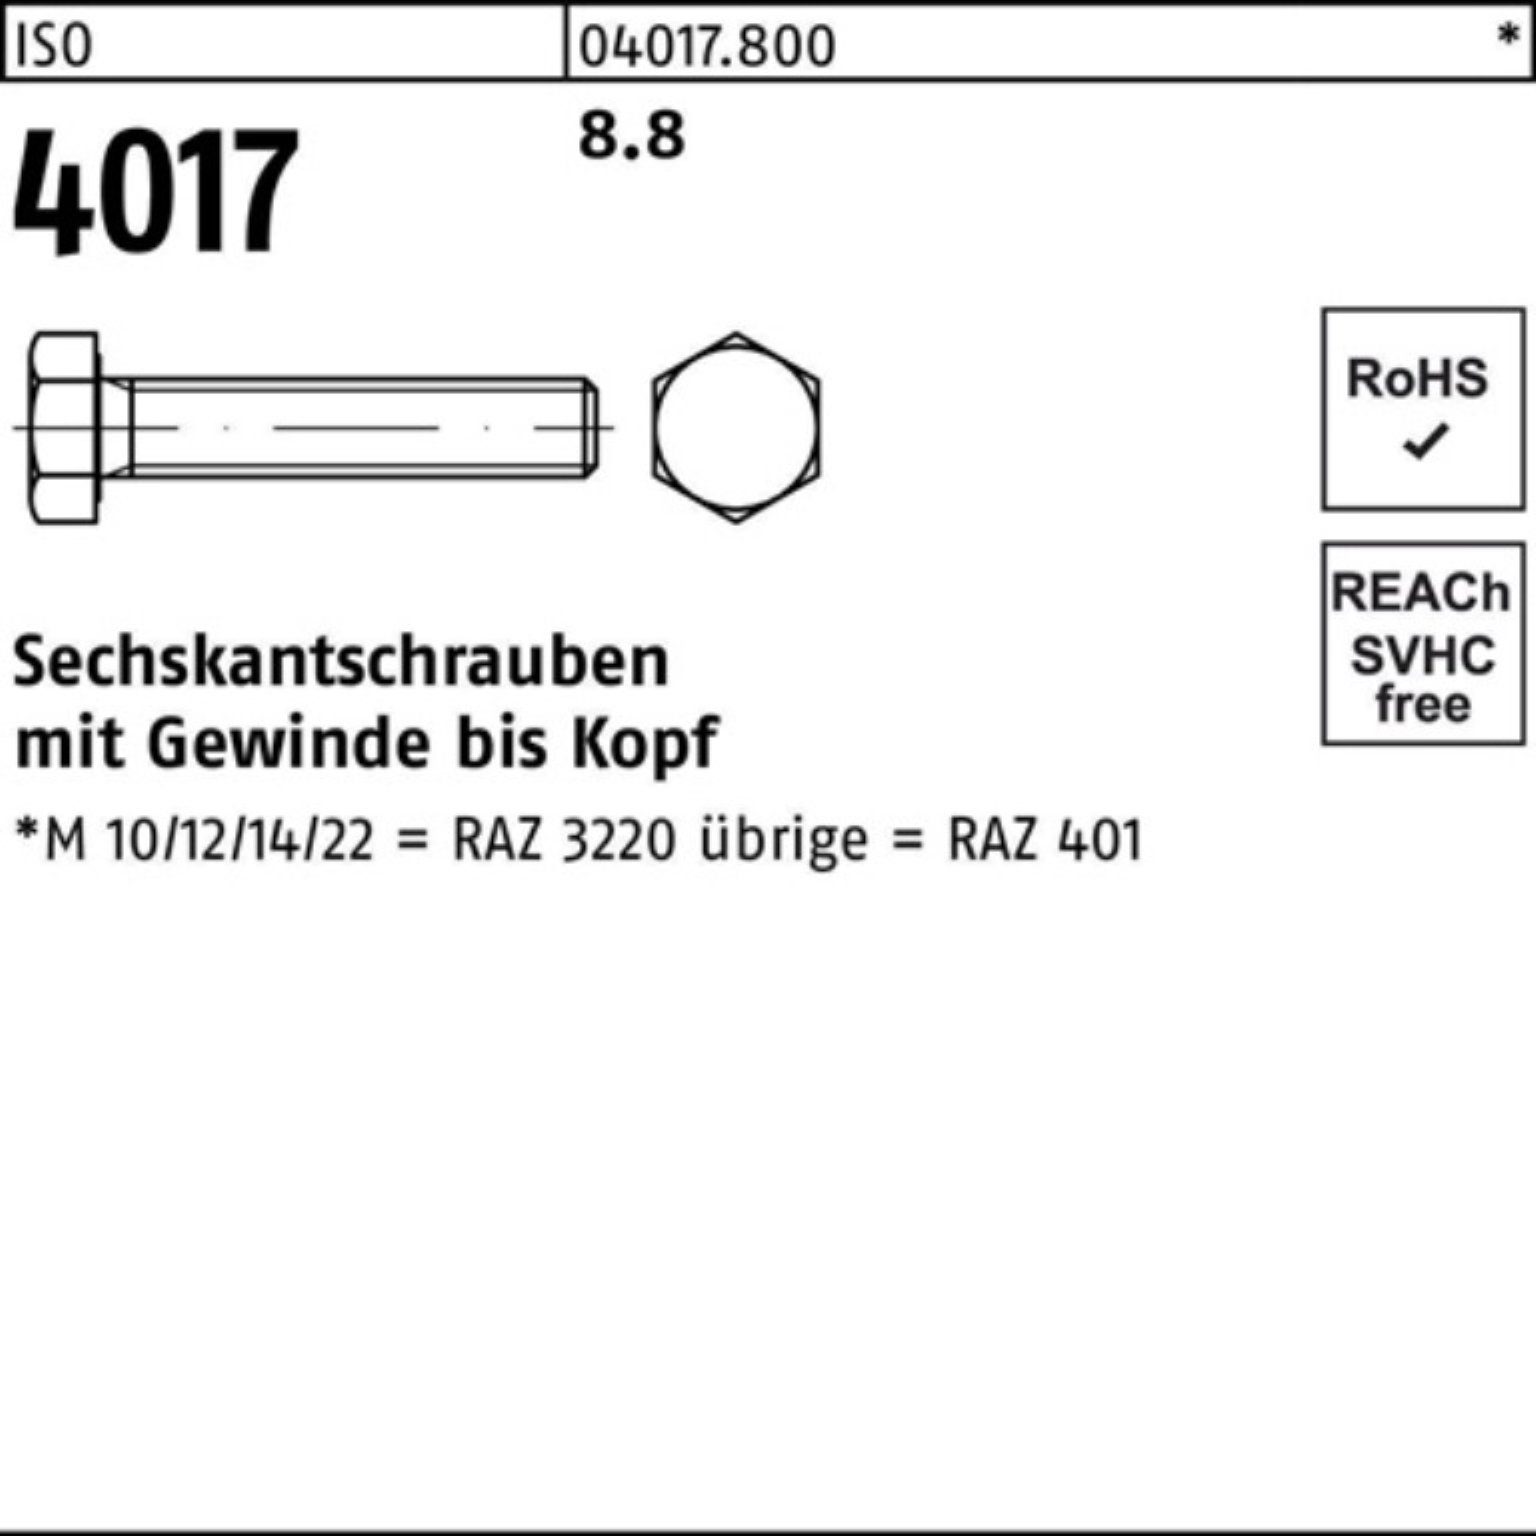 ISO 4017 4017 Sechskantschraube ISO 1 Bufab VG 8.8 Stück 40 100er Pack Sechskantschraube M33x